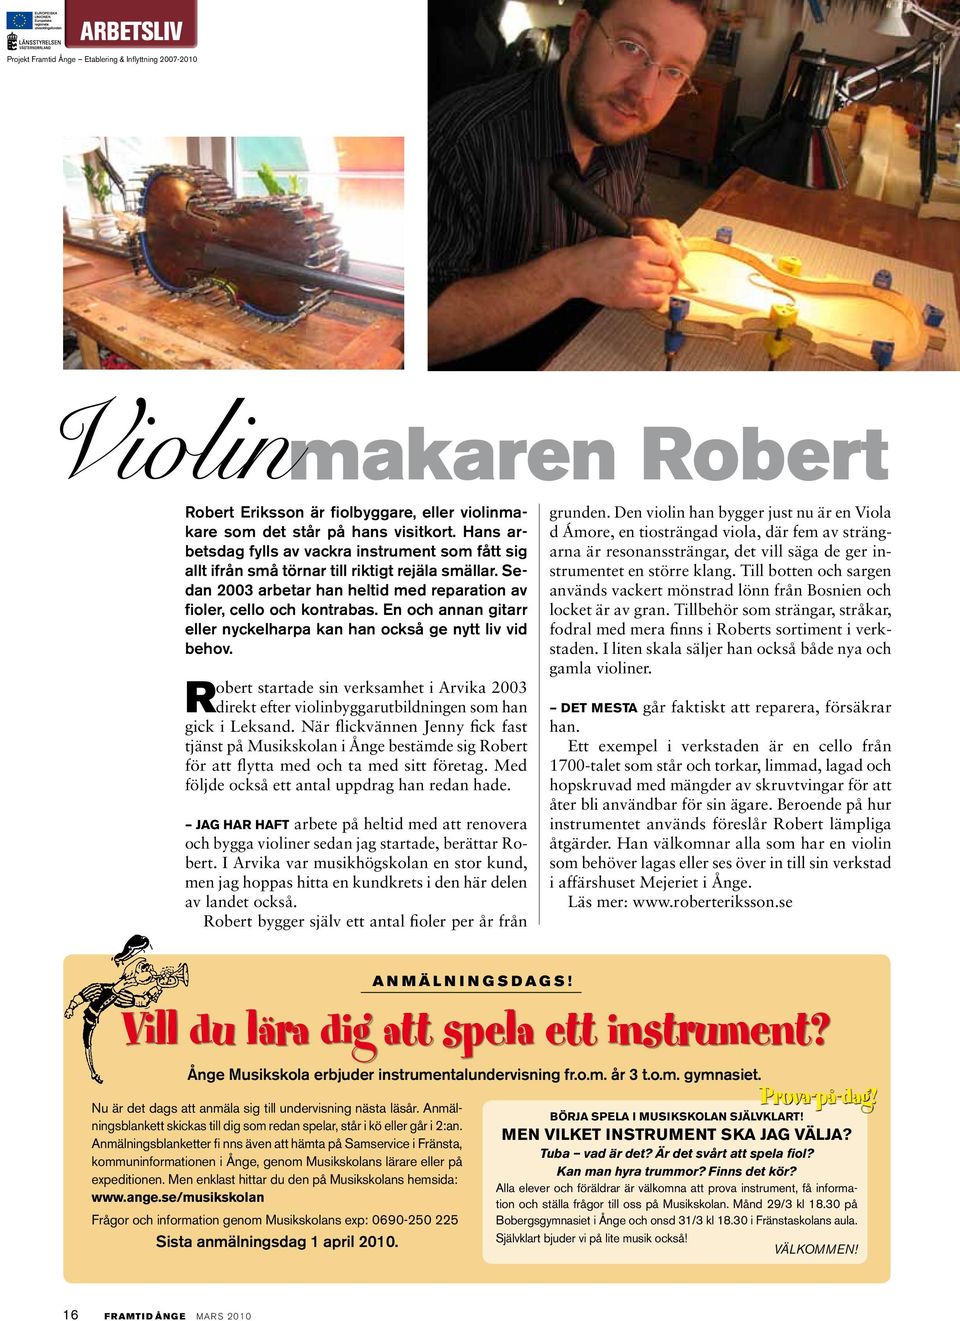 En och annan gitarr eller nyckelharpa kan han också ge nytt liv vid behov. Robert startade sin verksamhet i Arvika 2003 direkt efter violinbyggarutbildningen som han gick i Leksand.